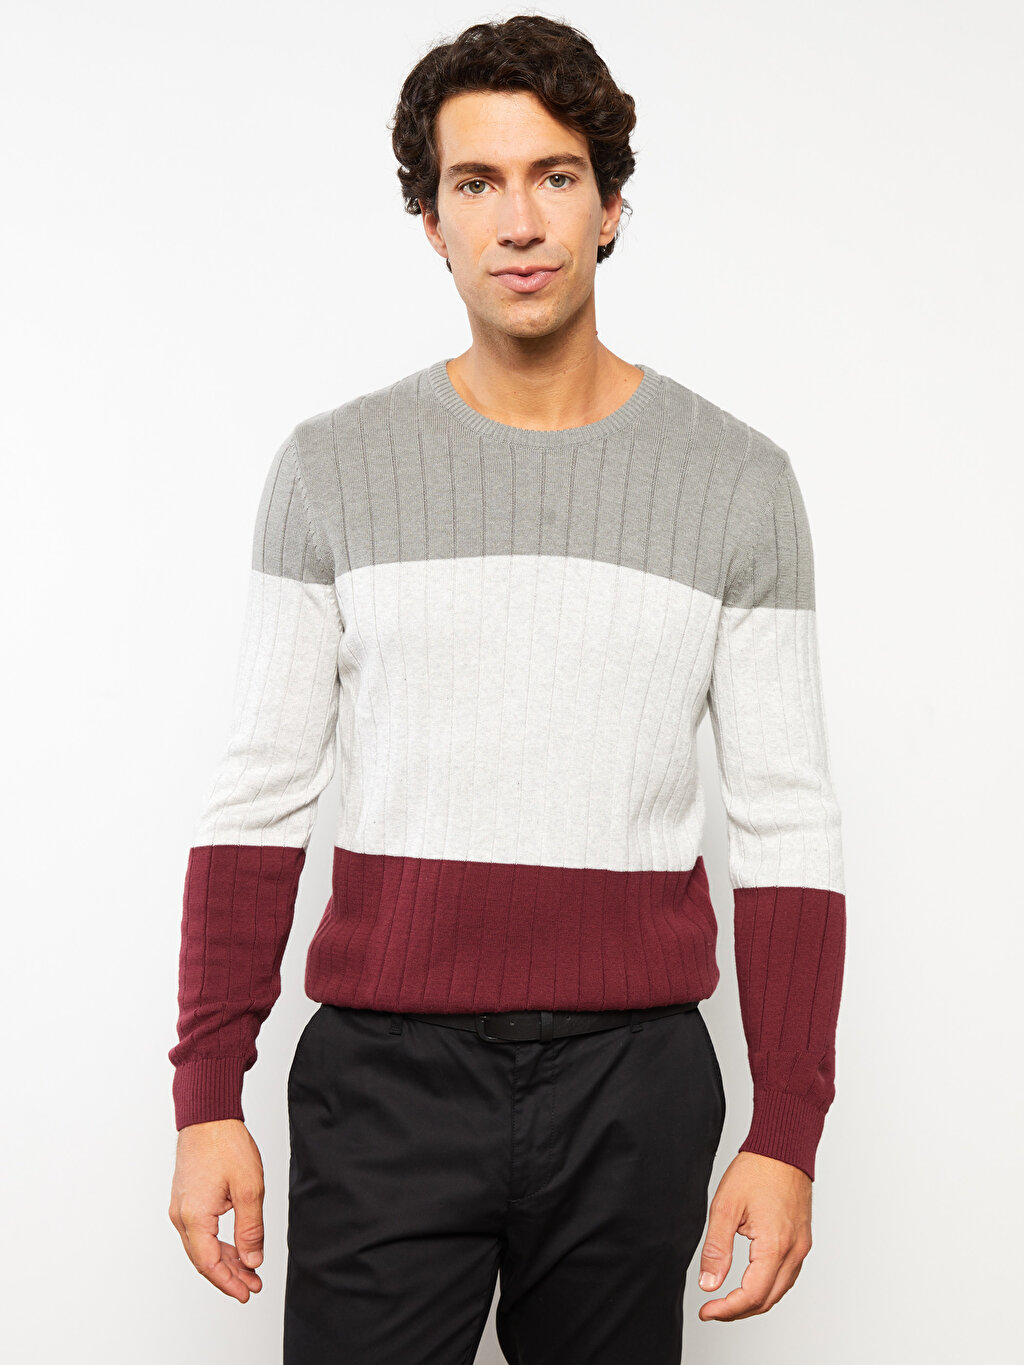 Crew Neck Long Sleeve Color Block Men's Knitwear Sweater -W26179Z8-HMB ...